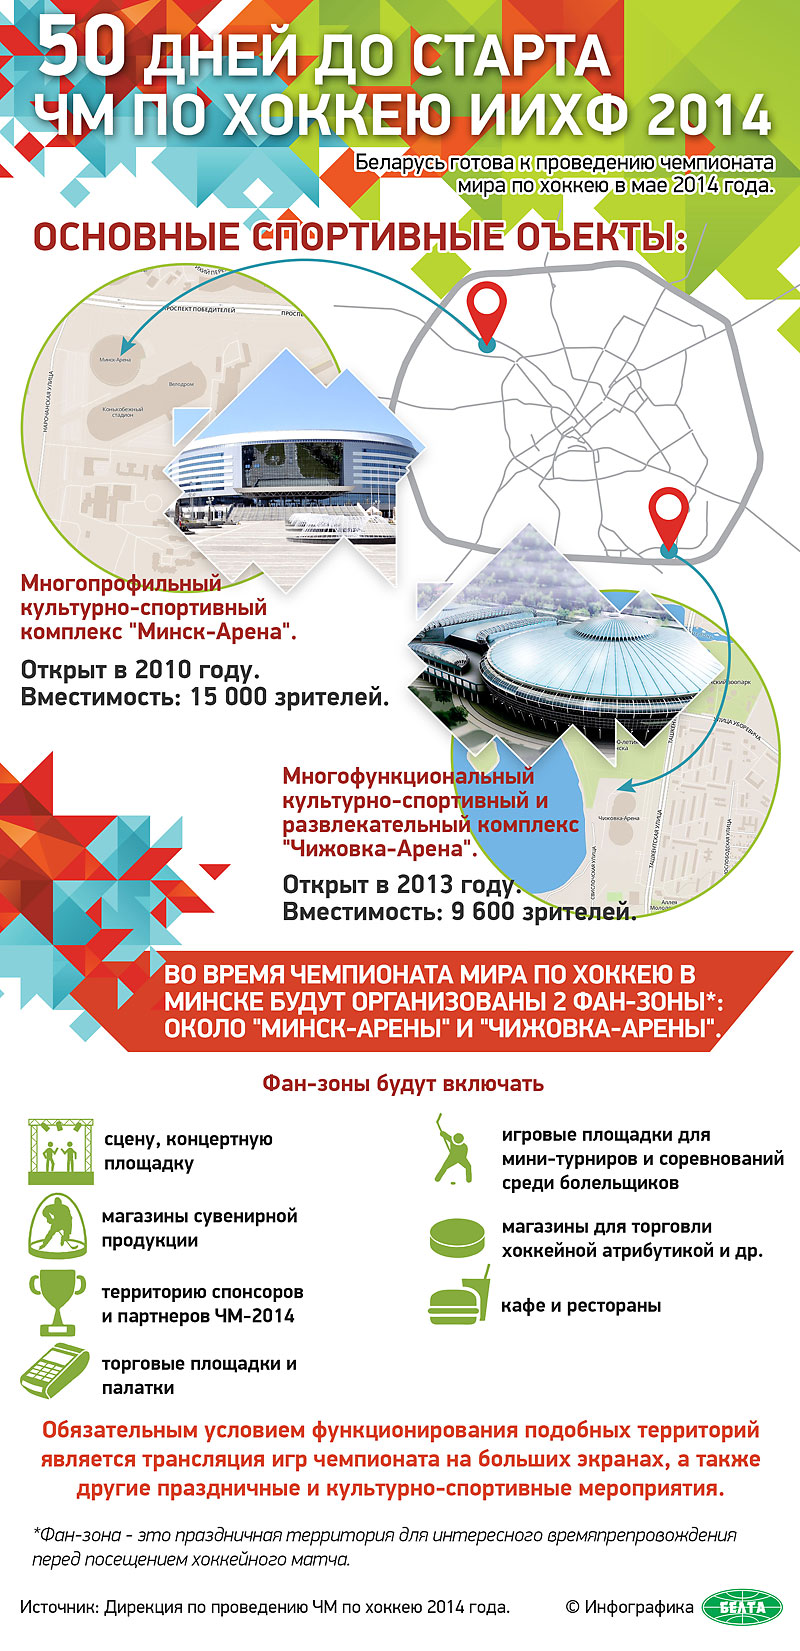 Арены и фан-зоны на ЧМ по хоккею-2014 в Минске